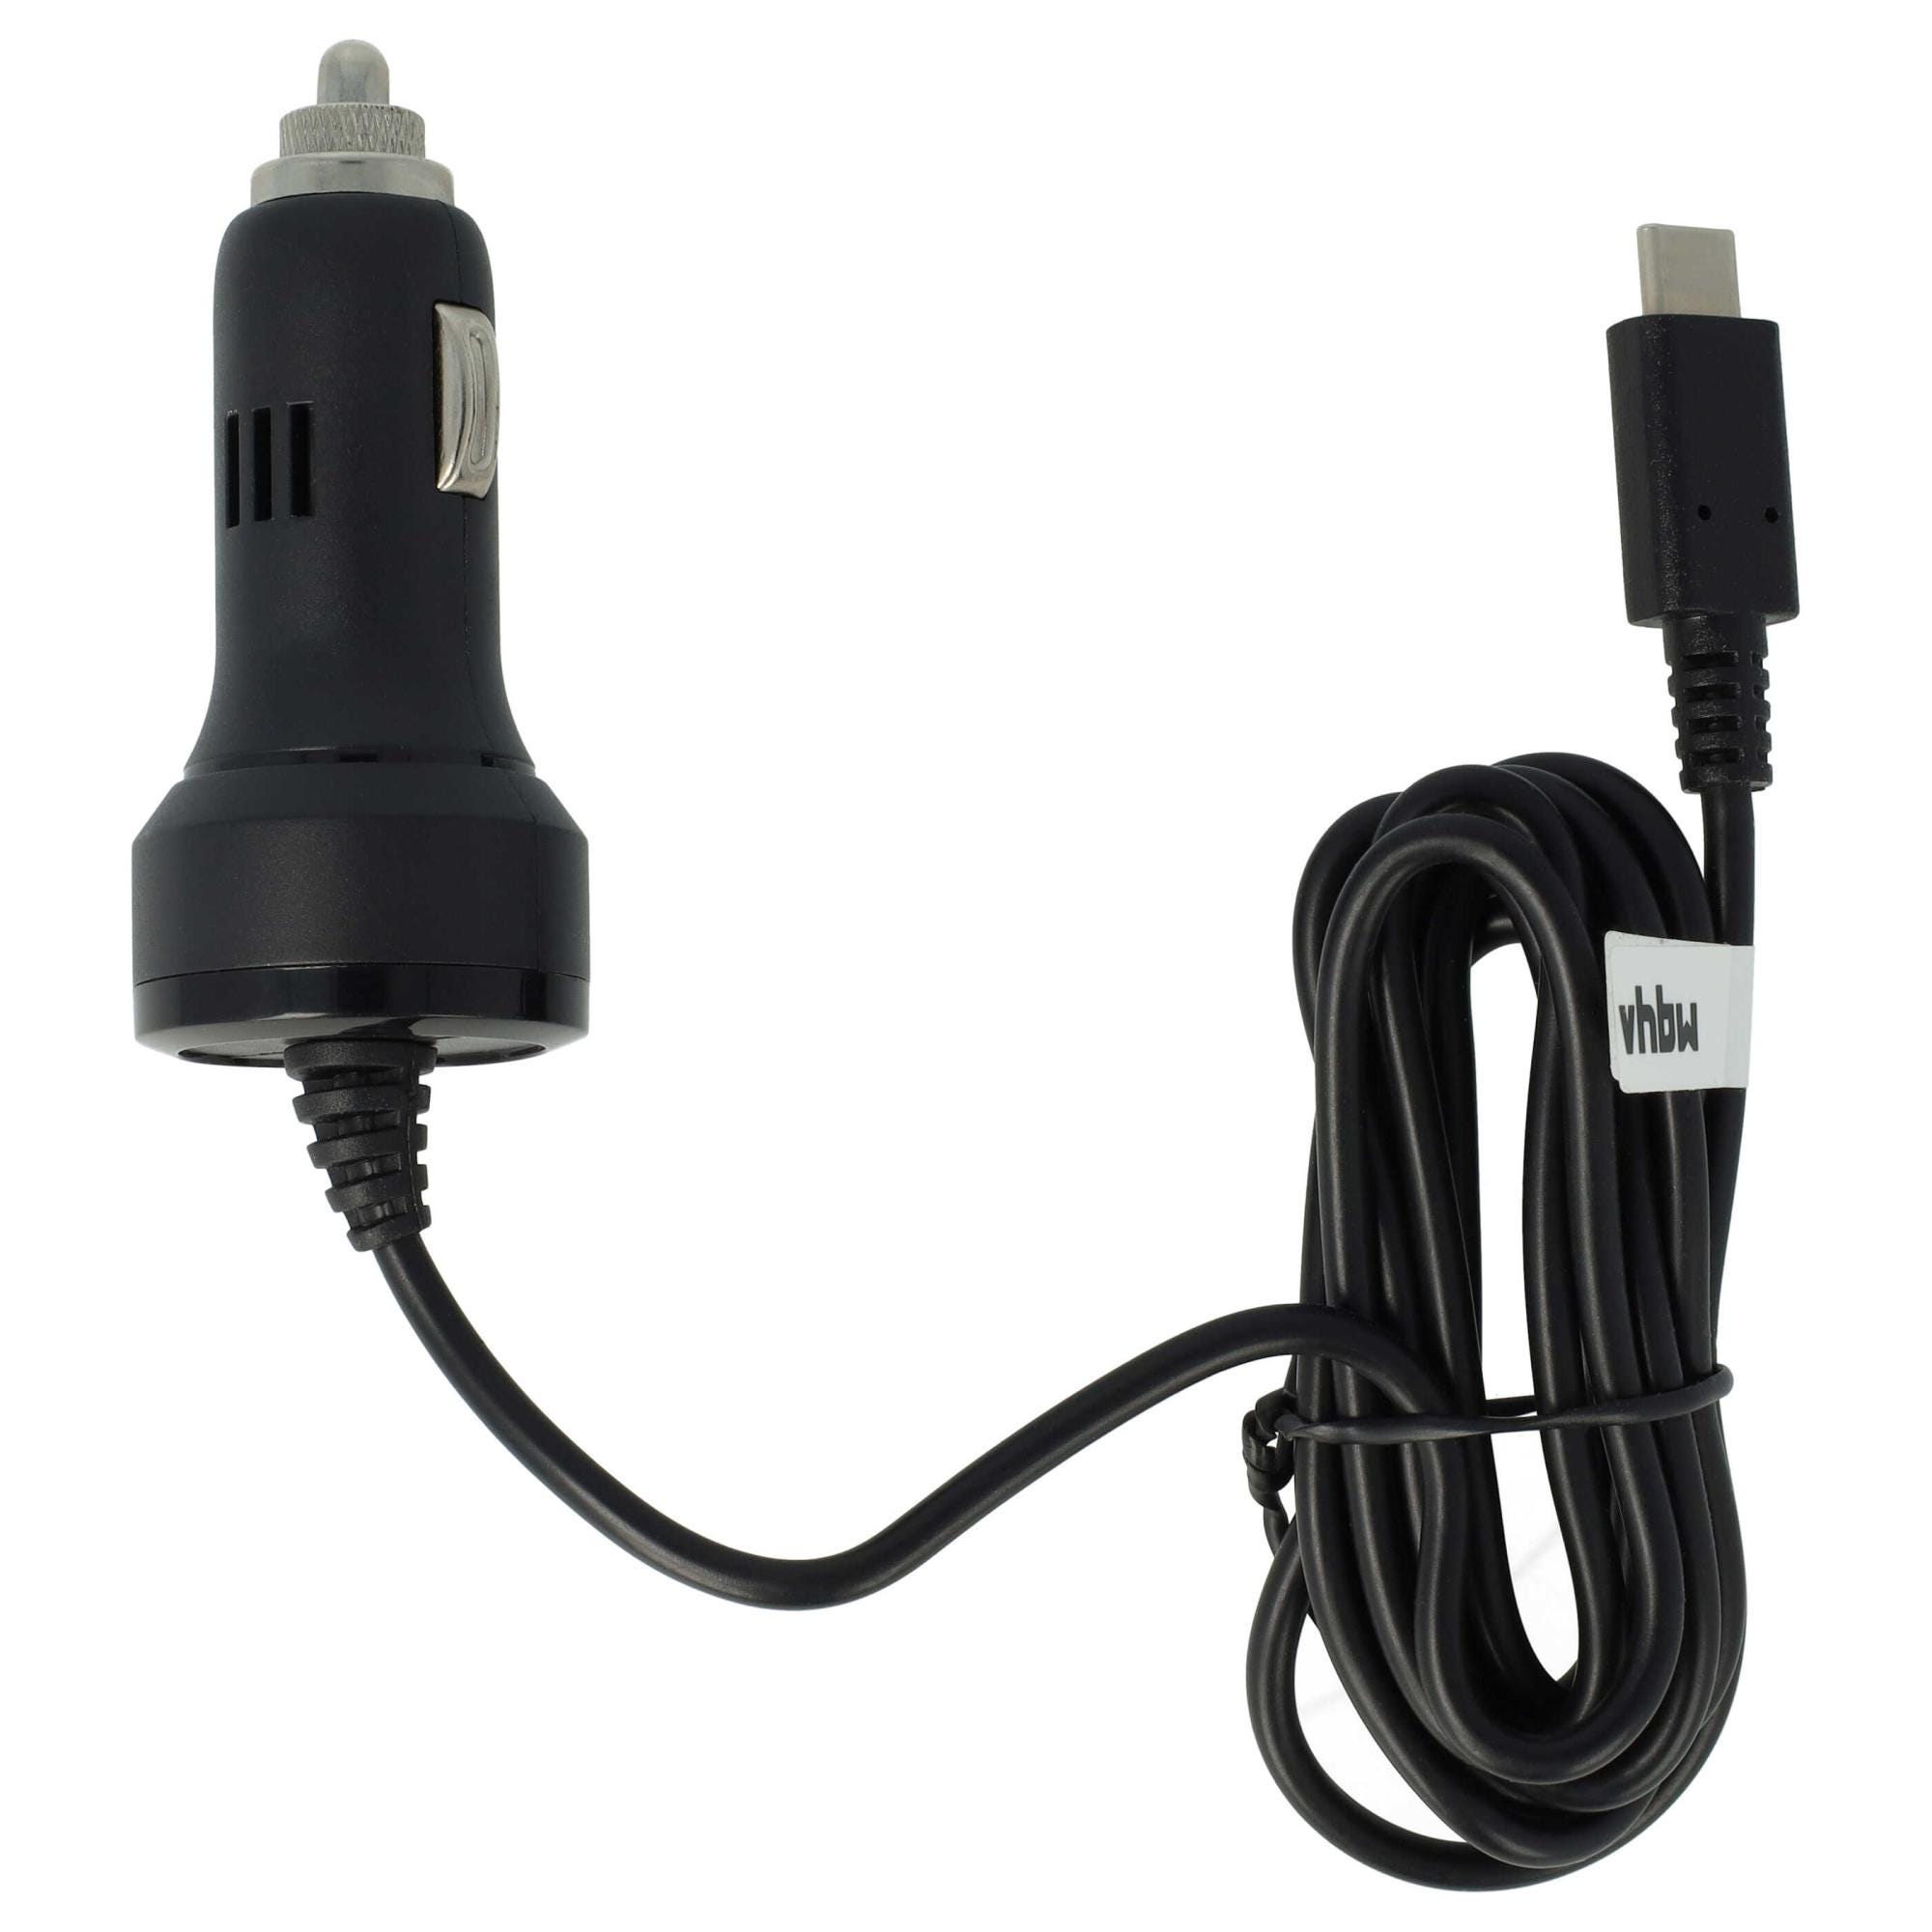 Chargeur Voiture Adaptateur Allume-Cigare USB - Noir - Chargeur